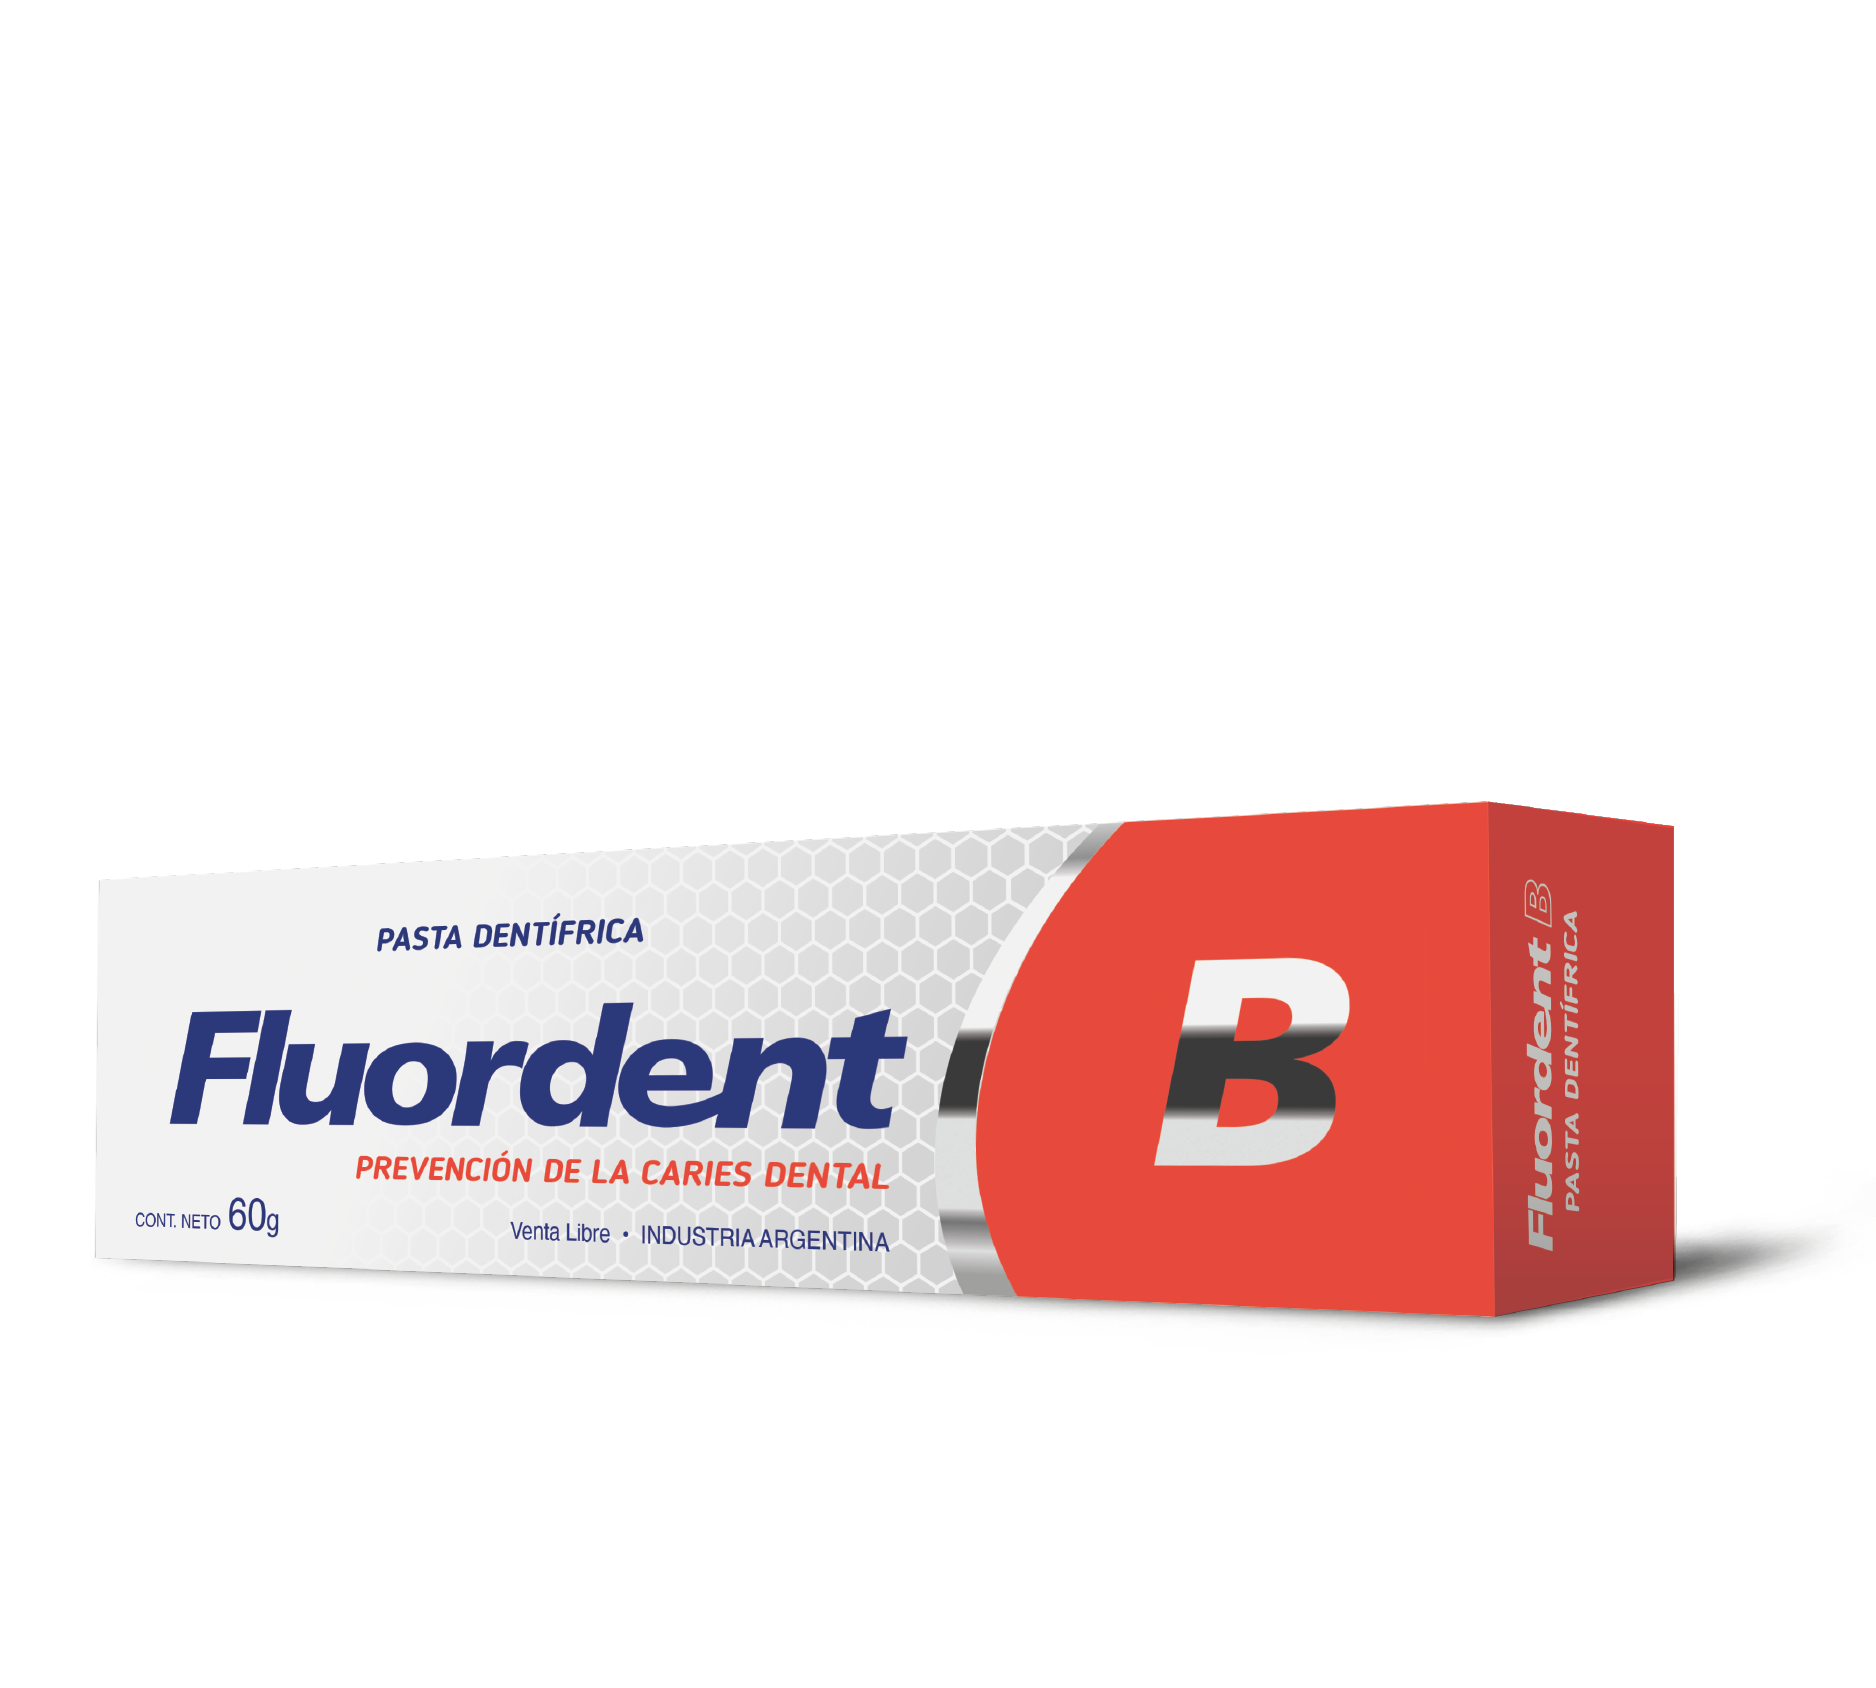 Fluordent B